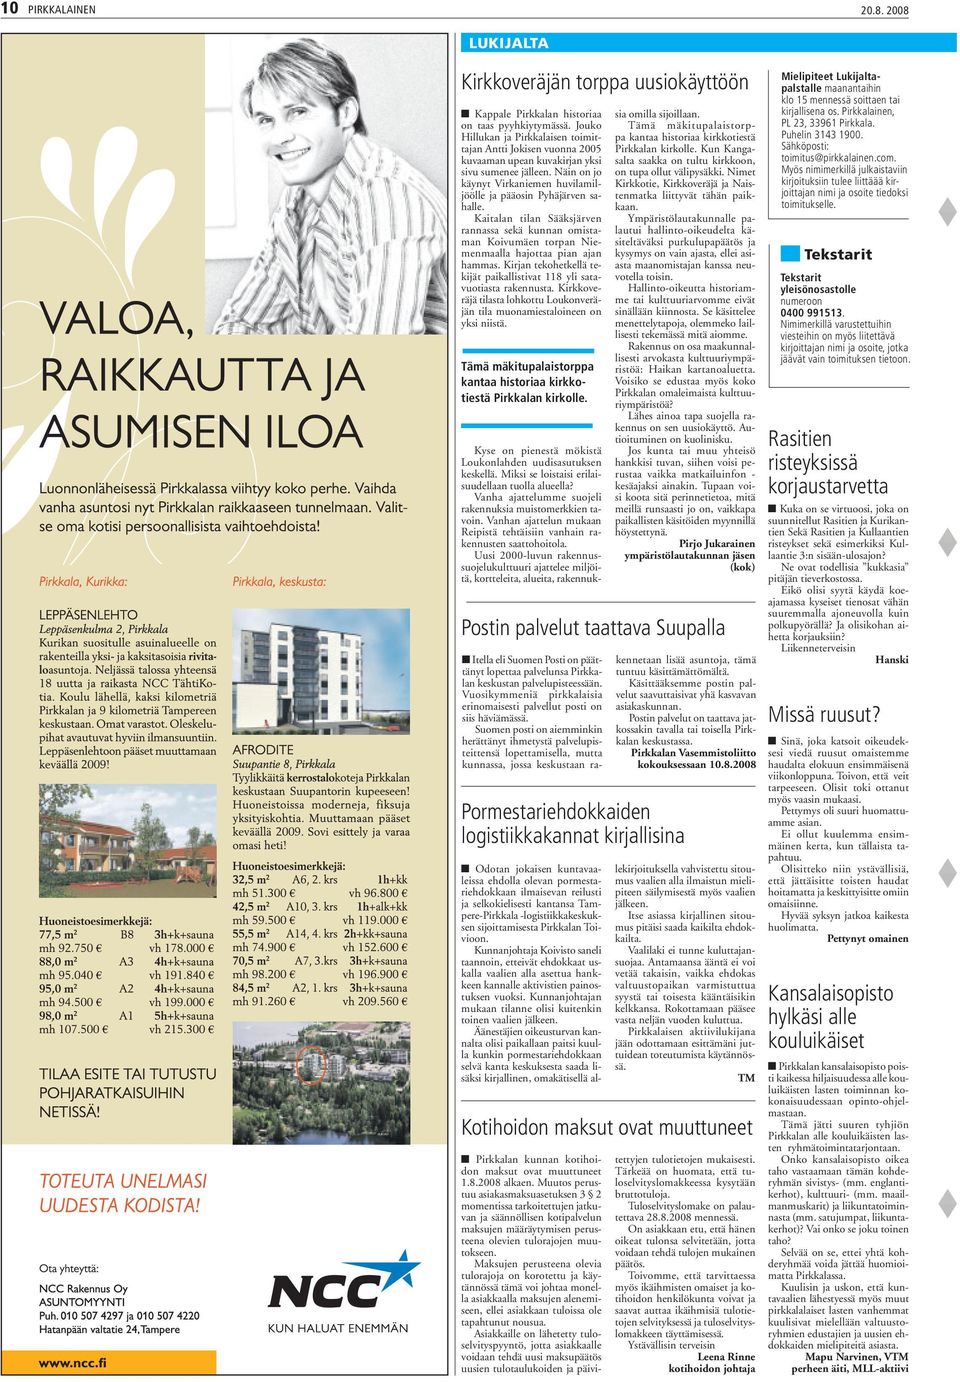 Kaitalan tilan Sääksjärven rannassa sekä kunnan omistaman Koivumäen torpan Niemenmaalla hajottaa pian ajan hammas. Kirjan tekohetkellä tekijät paikallistivat 118 yli satavuotiasta rakennusta.